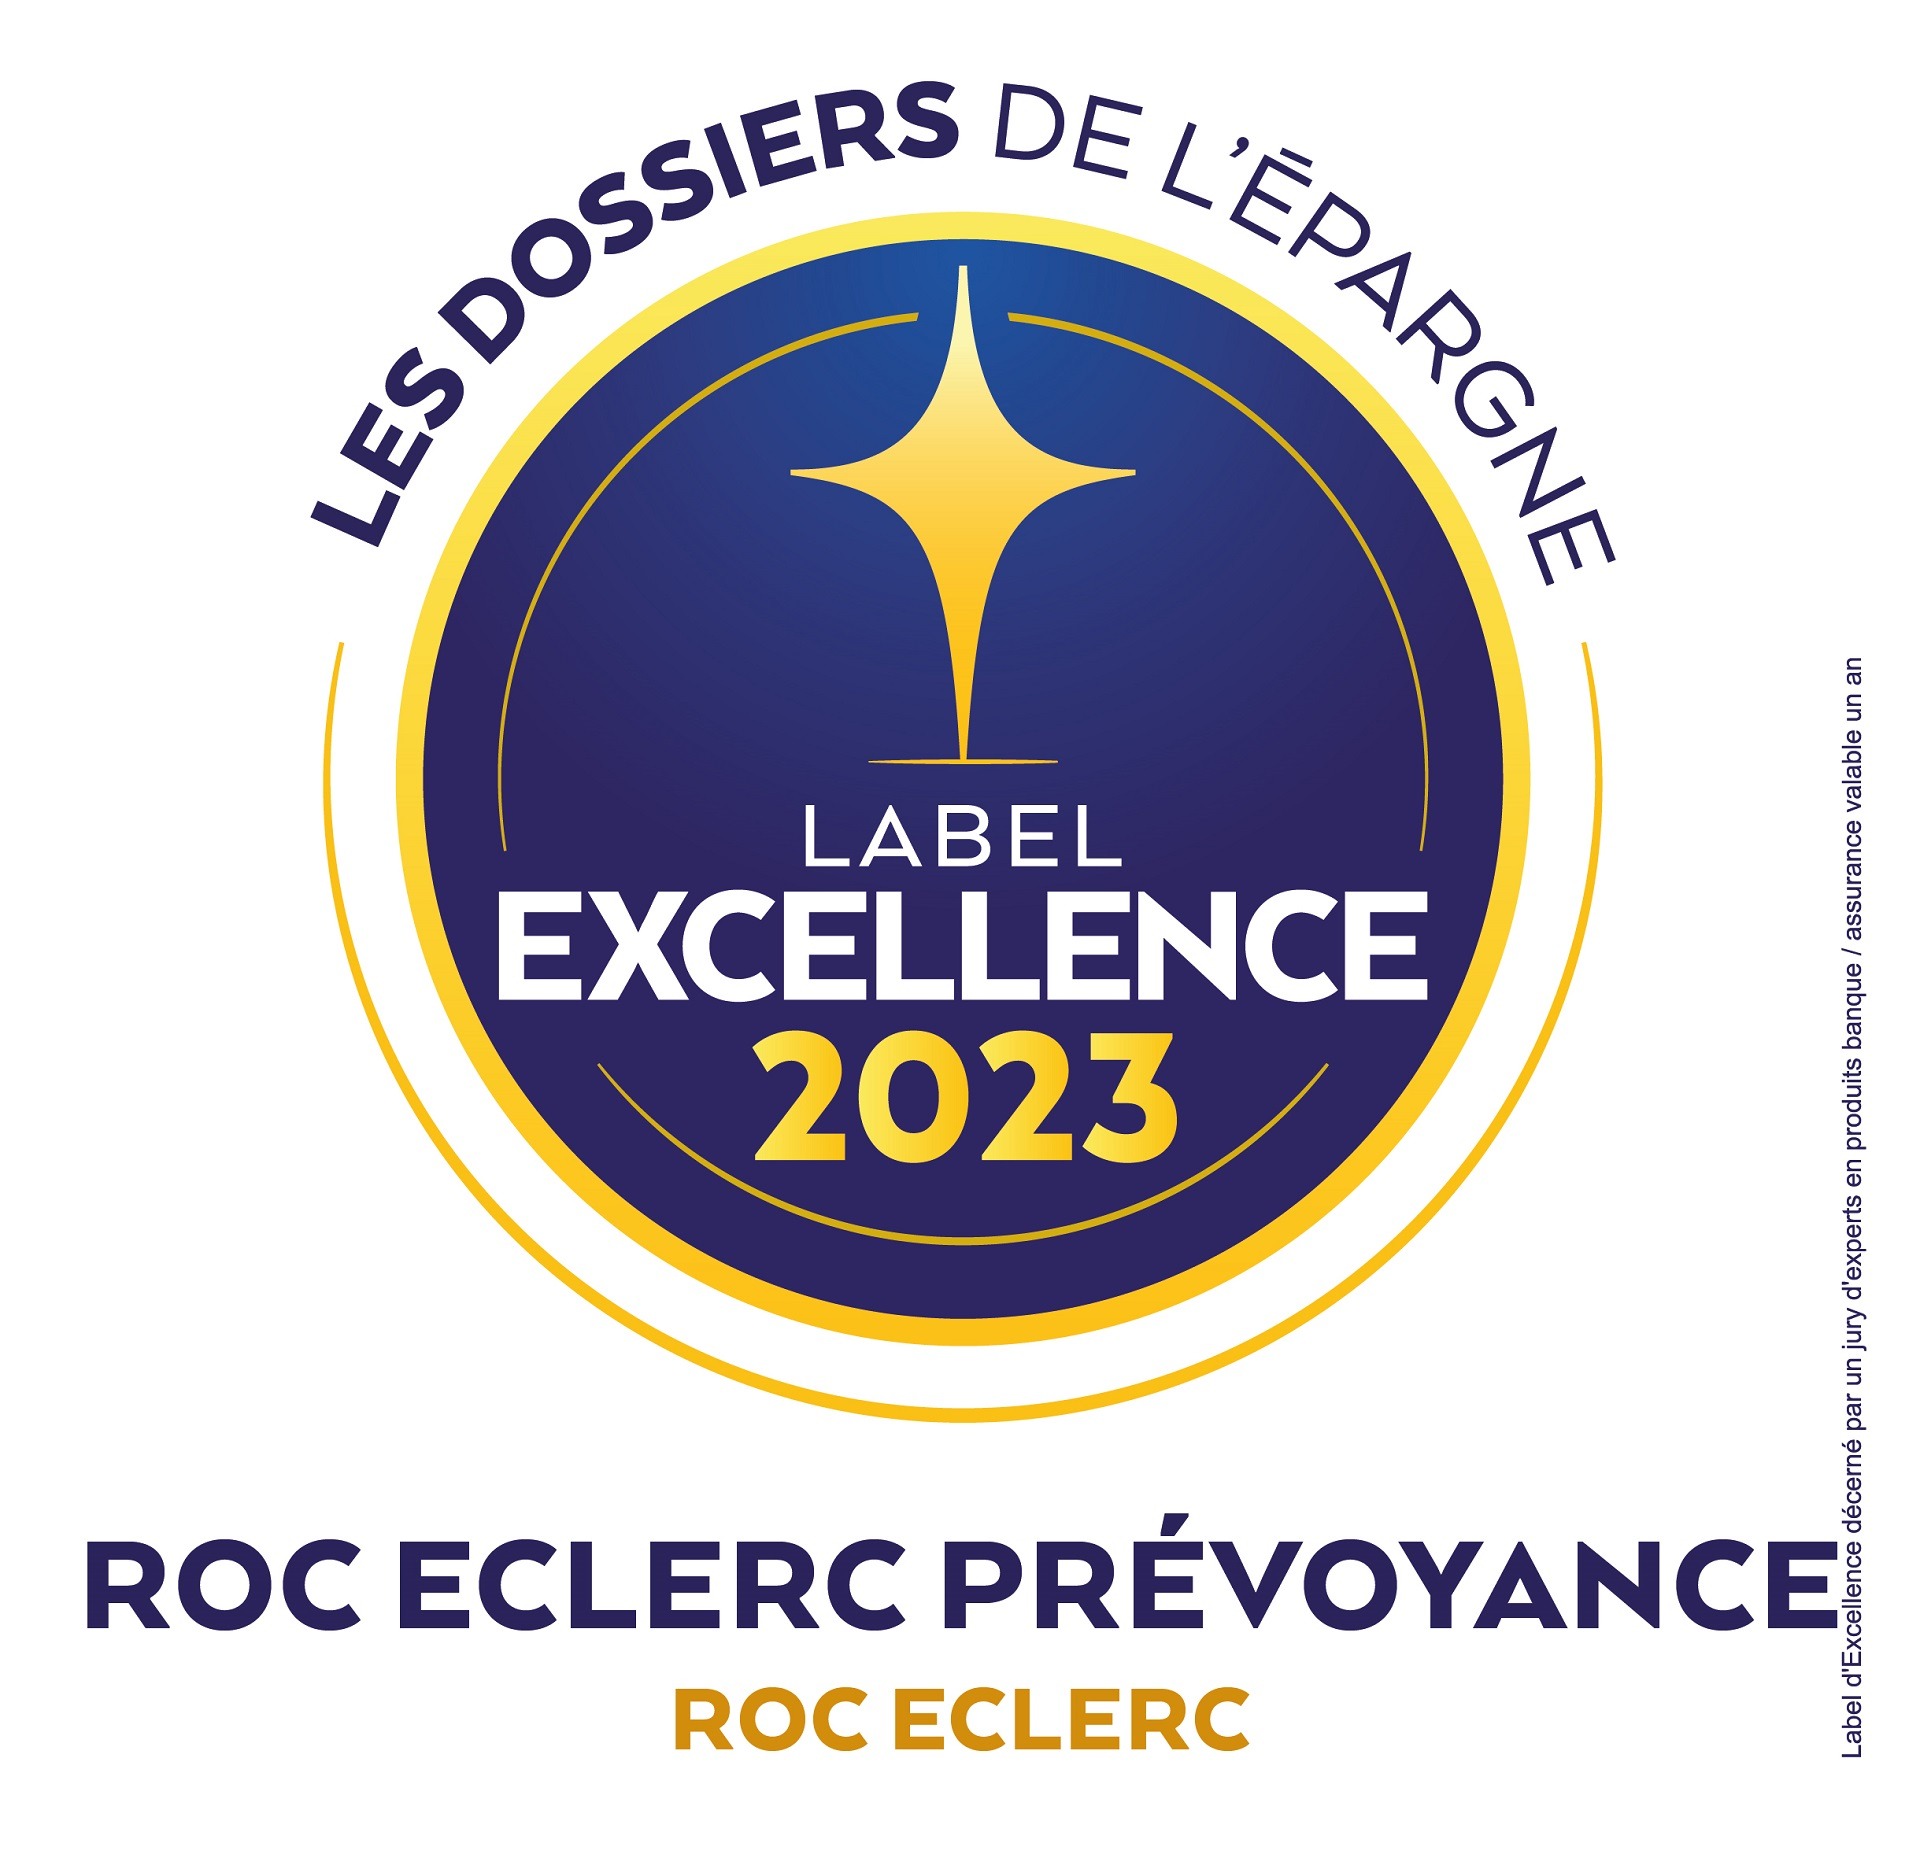 ROC-ECLERC-PREVOYANCE-Label-Excellence-2023